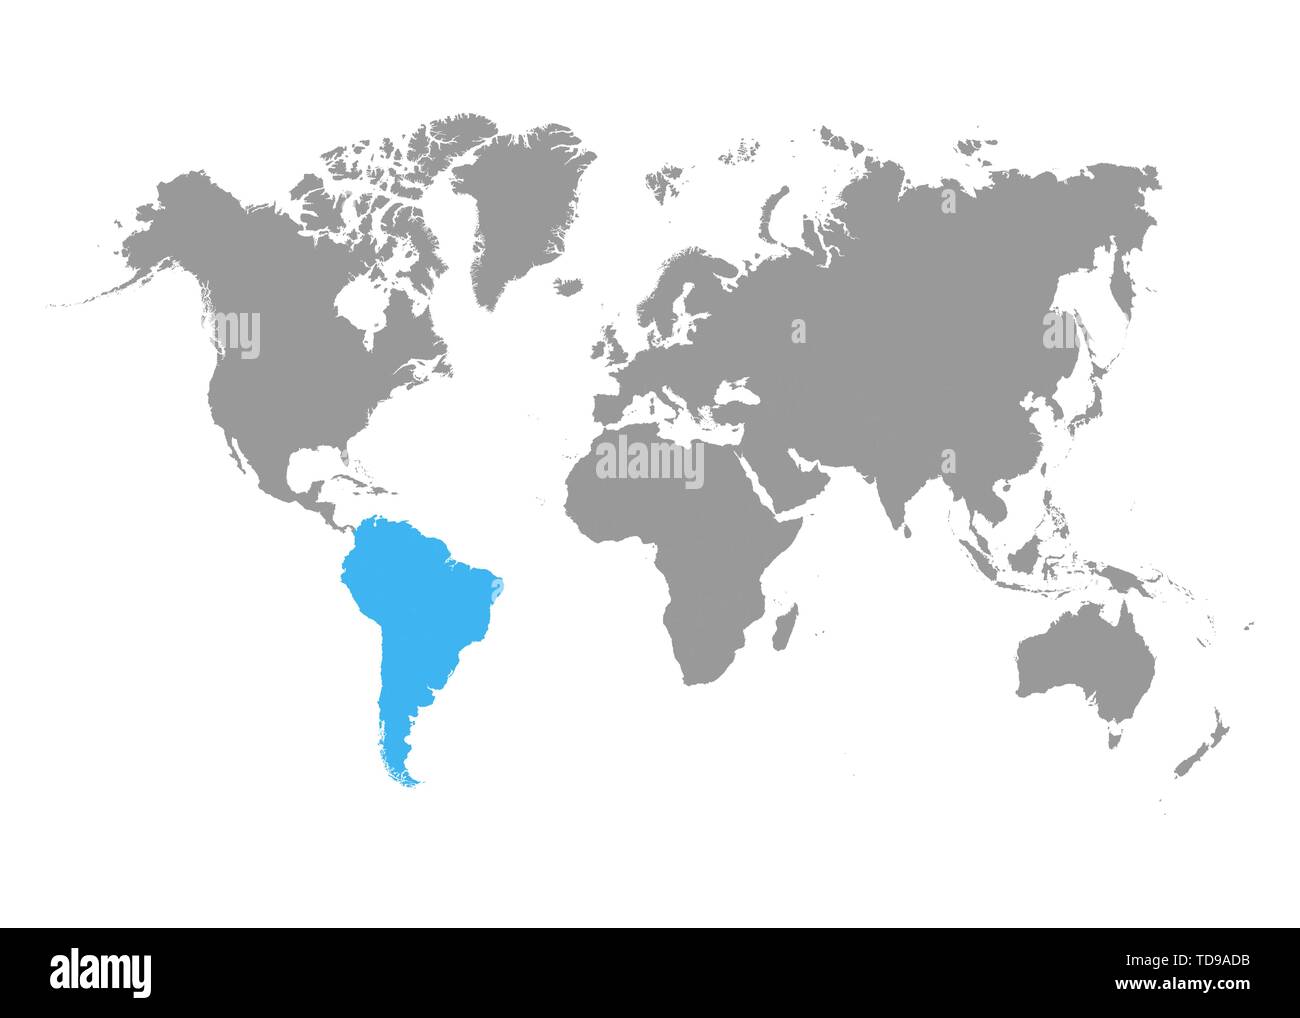 La mappa di Sud America è evidenziata in blu sulla mappa del mondo. Vettore Illustrazione Vettoriale